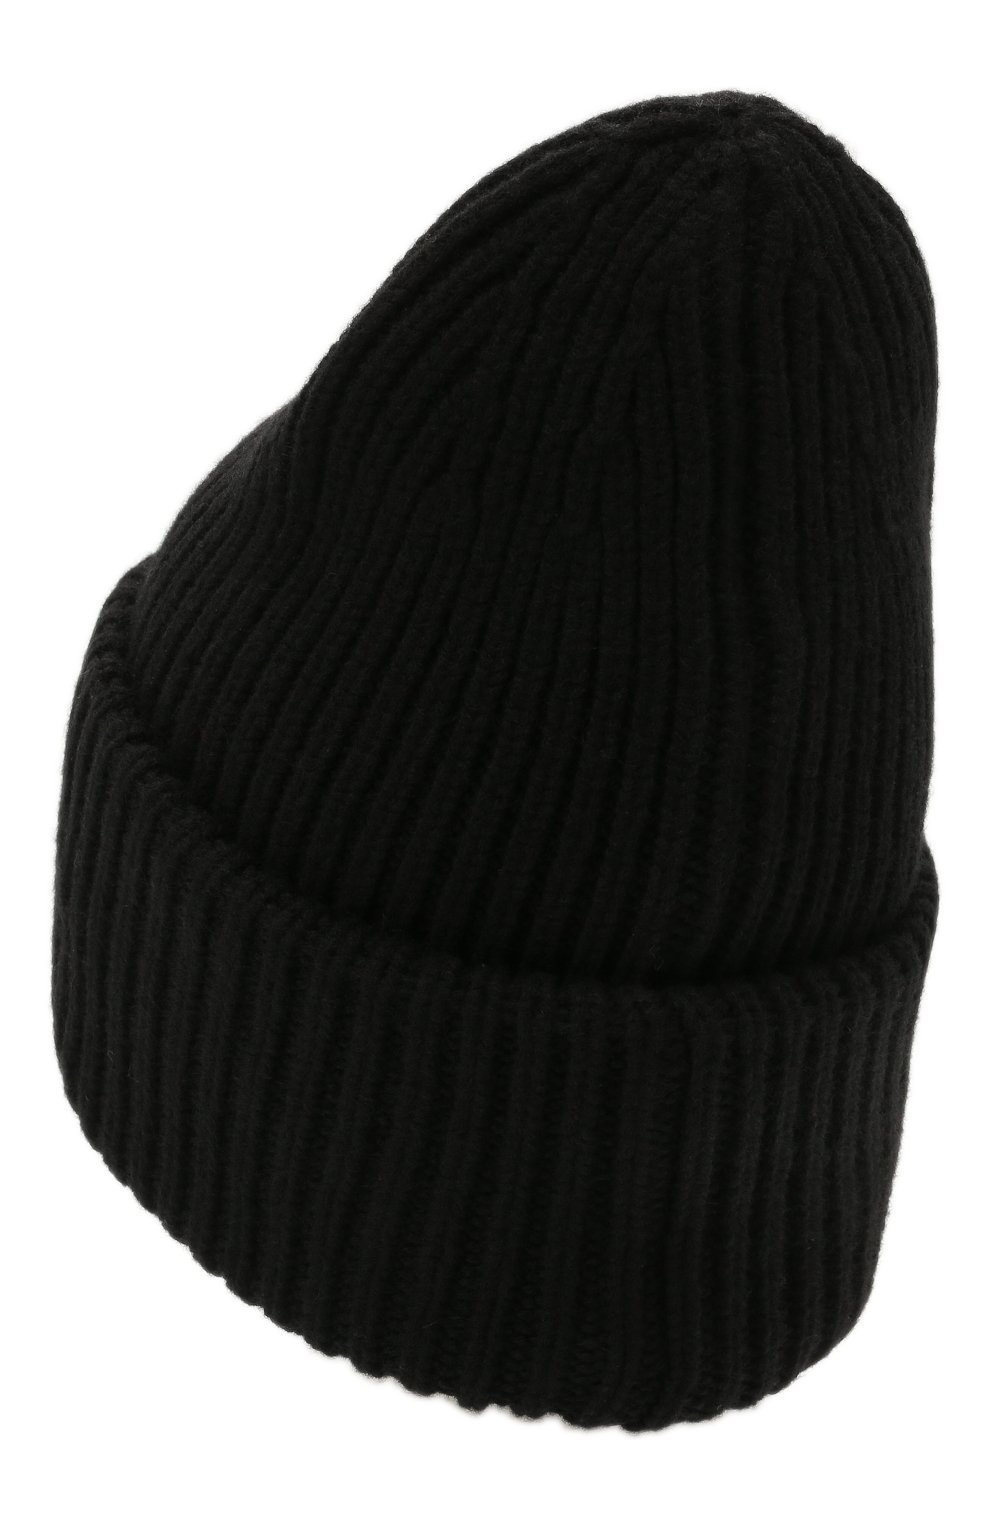 Мужская шапка из шерсти и кашемира MONCLER черного цвета, арт. G2-091-3B000-48-M1127 | Фото 2 (Материал: Текстиль, Кашемир, Шерсть; Кросс-КТ: Трикотаж)